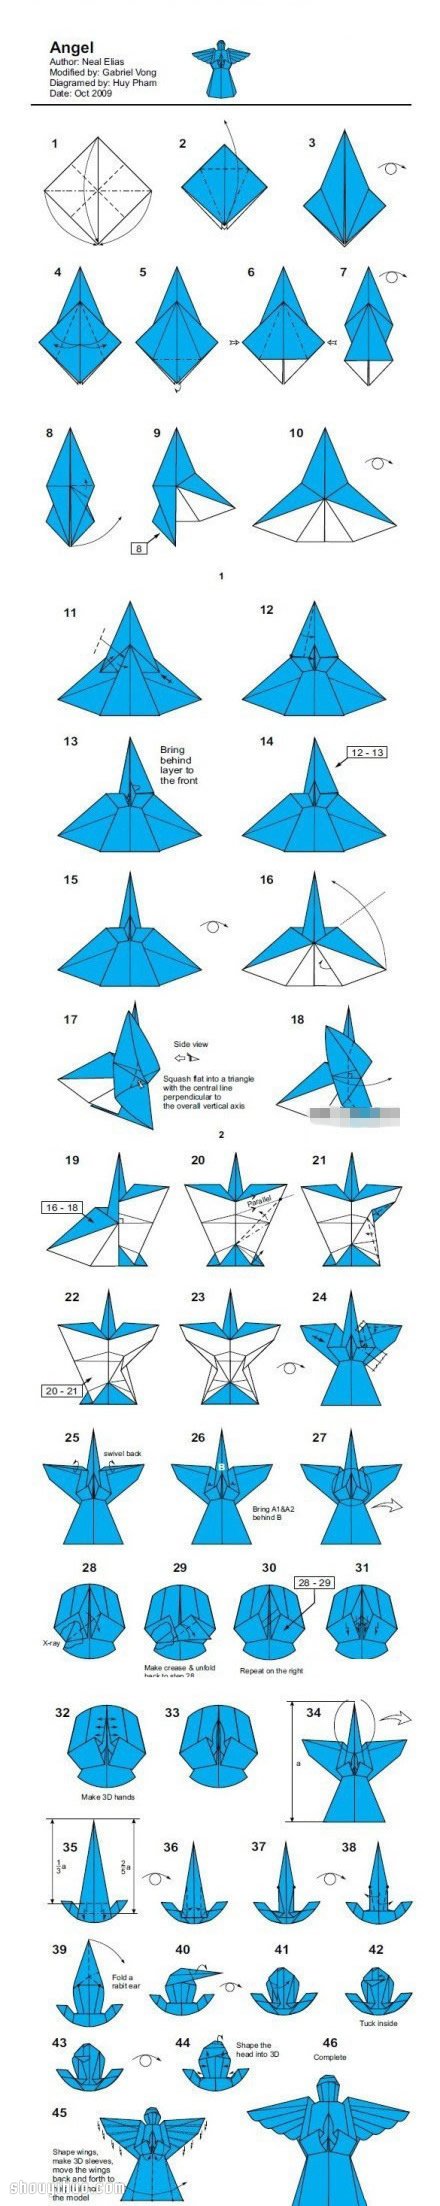 超复杂手工折纸天使的折法步骤图解教程